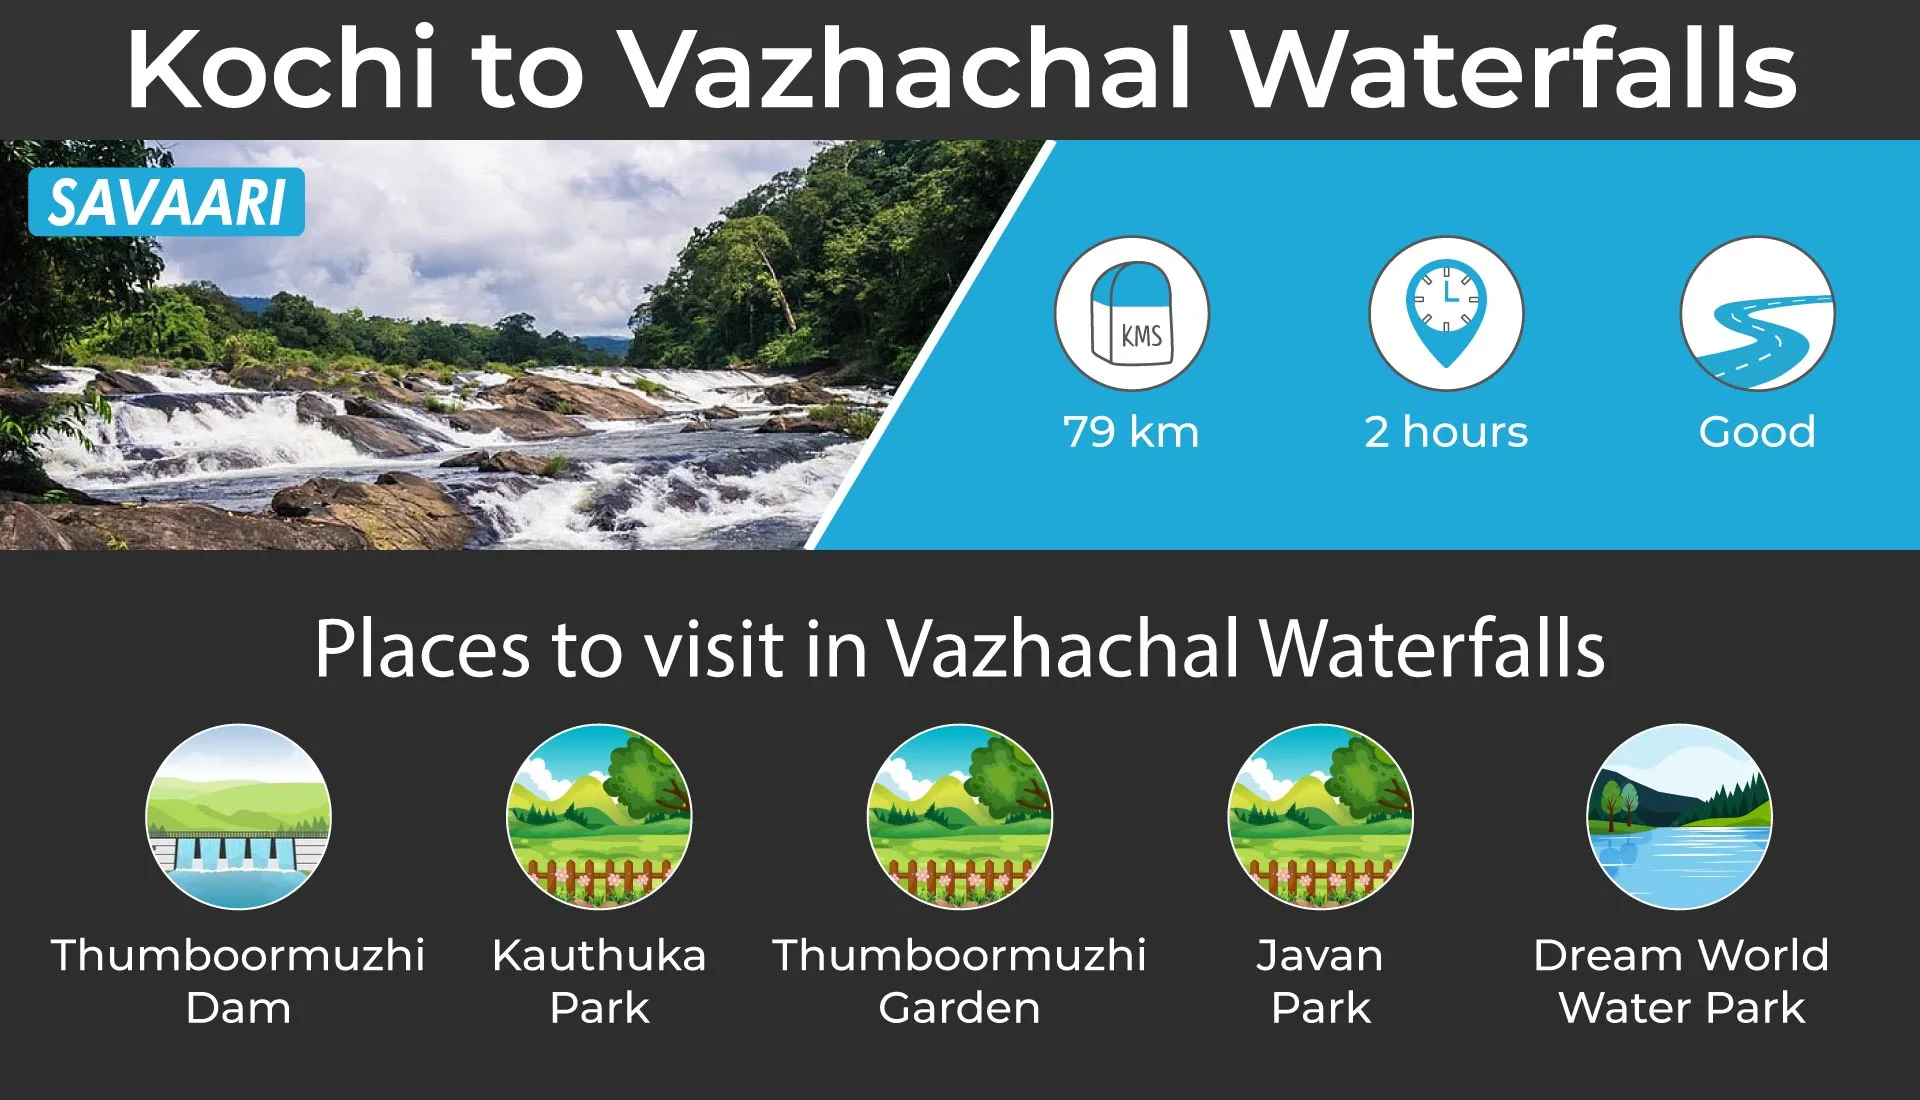 Vazhachal waterfall near Kochi